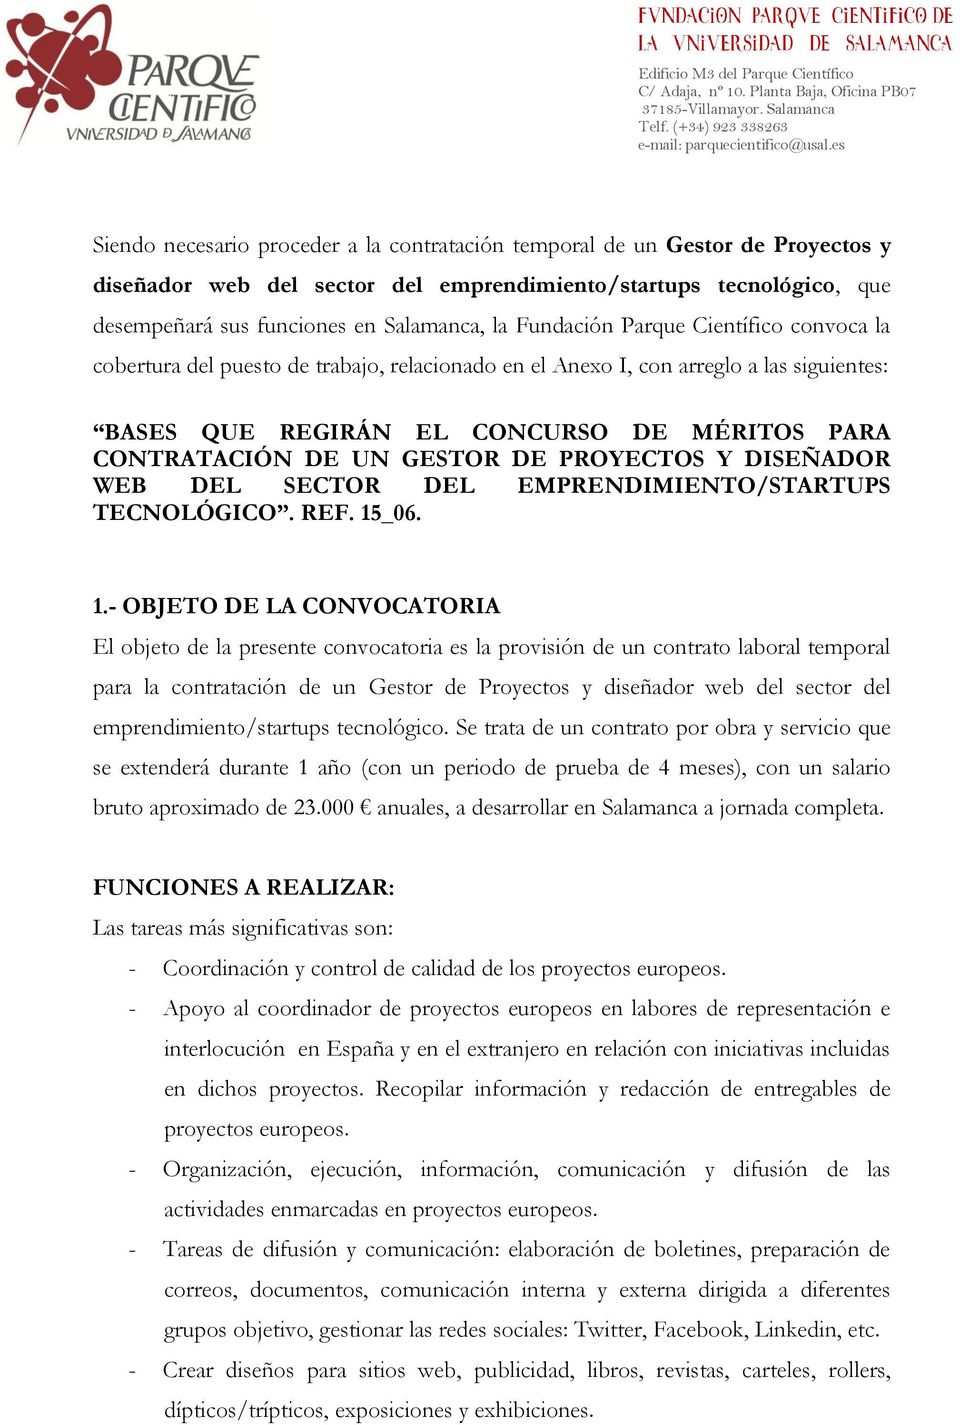 GESTOR DE PROYECTOS Y DISEÑADOR WEB DEL SECTOR DEL EMPRENDIMIENTO/STARTUPS TECNOLÓGICO. REF. 15